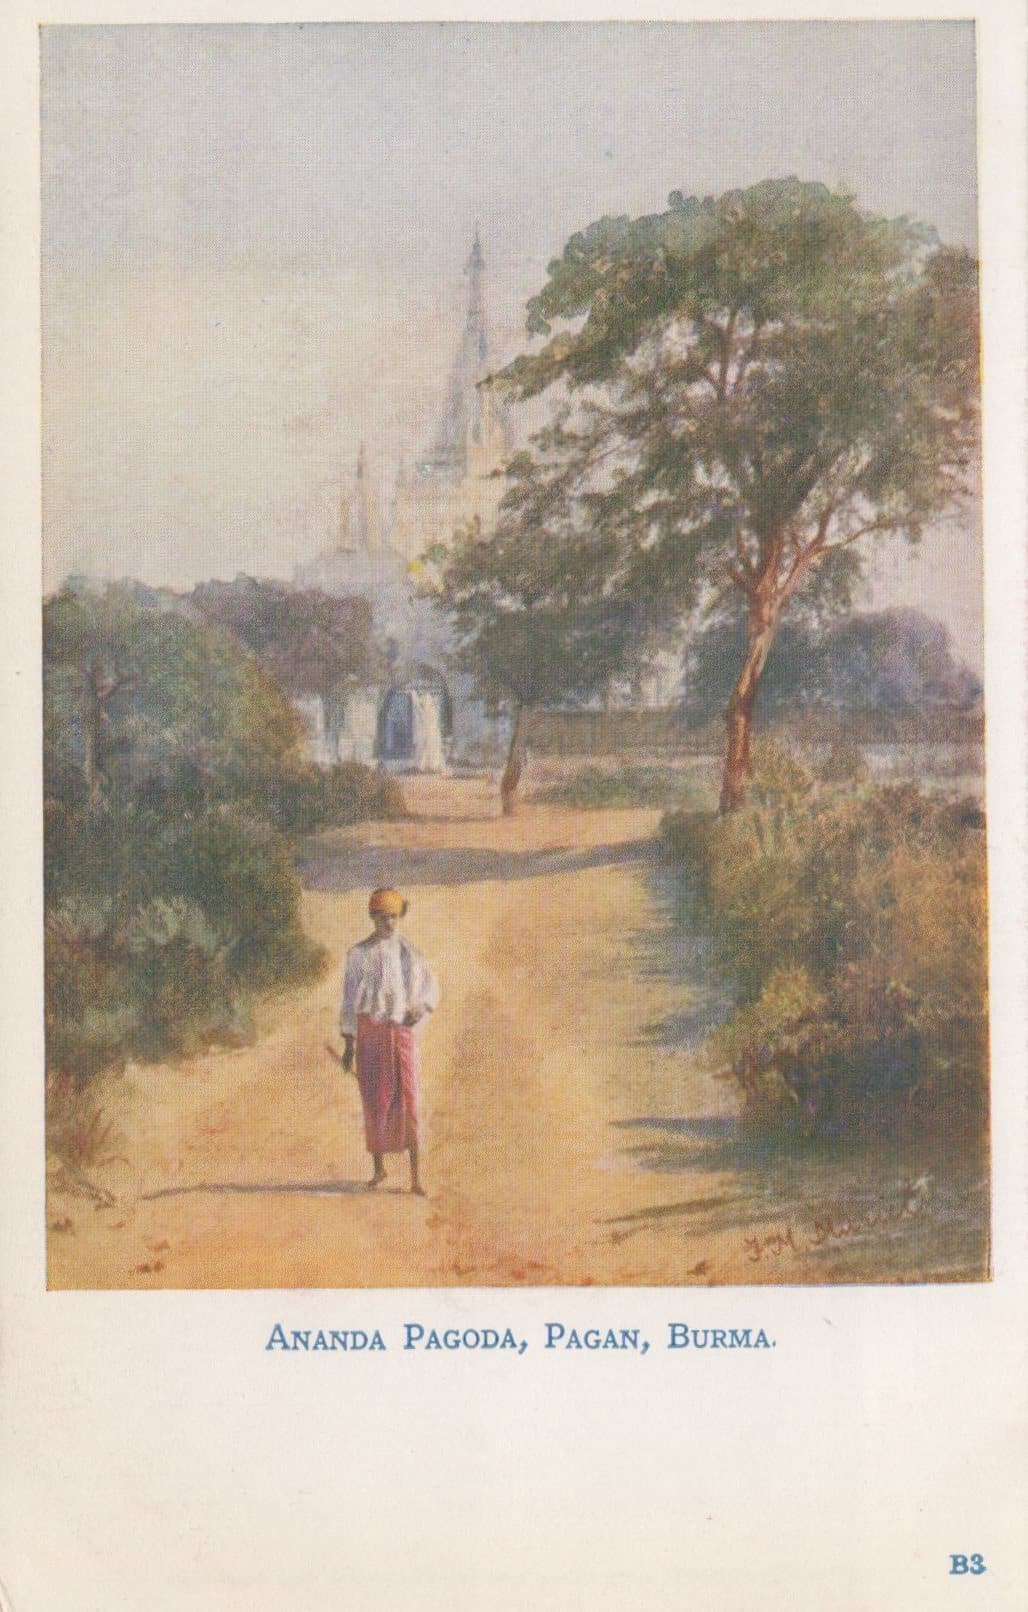 Burma Postcard - Ananda Pagoda, Pagan, Burma - Mo’s Postcards 